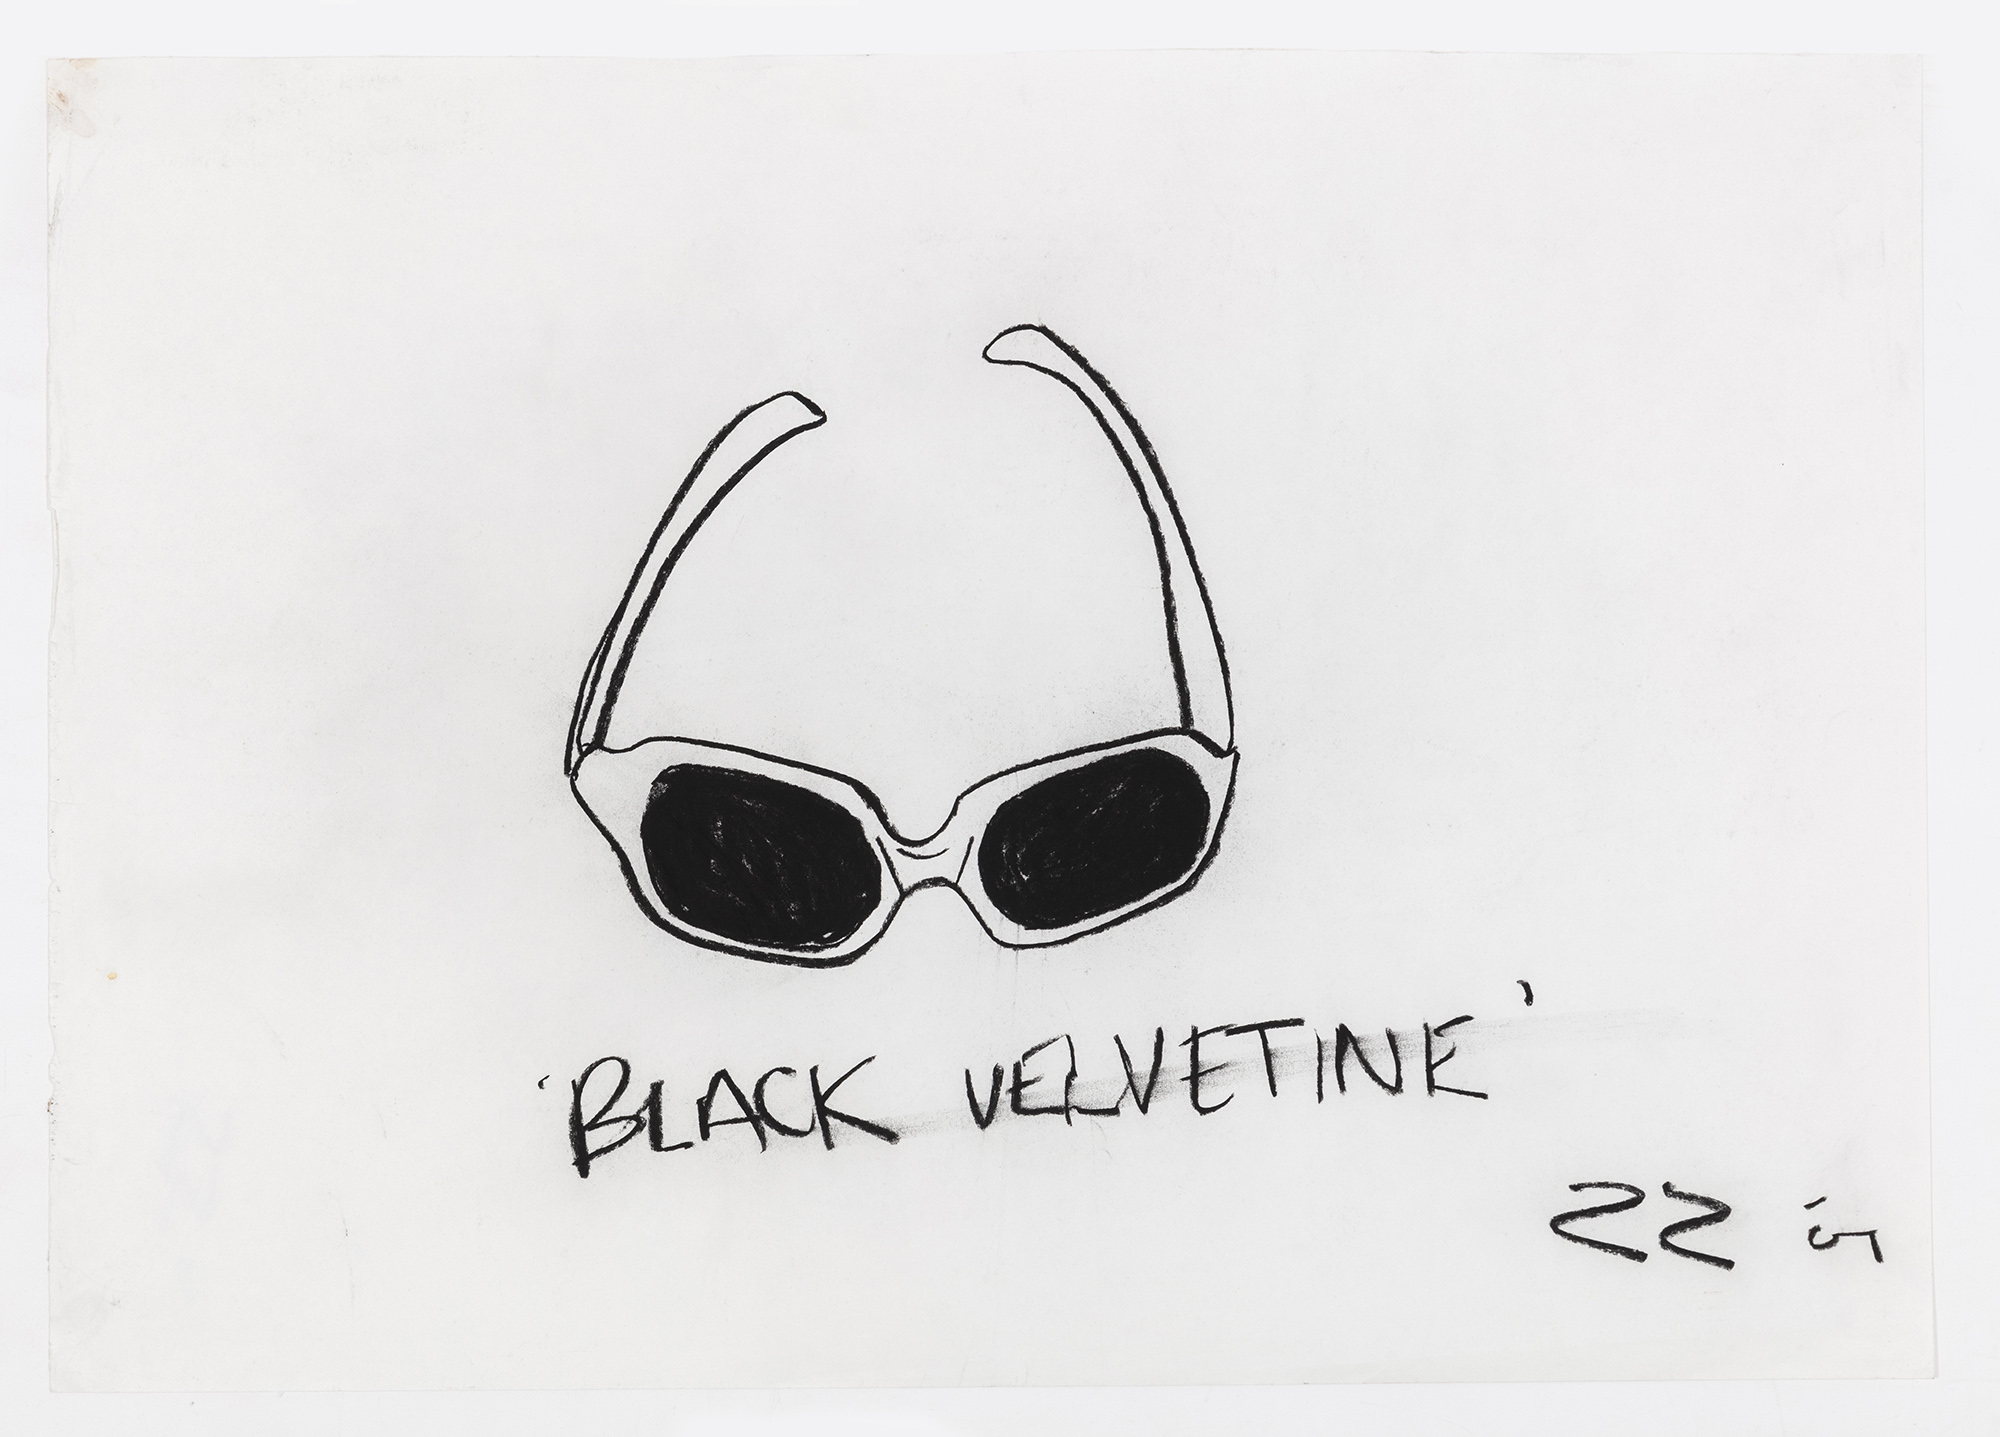  - BLACK VELVETINE, 2001